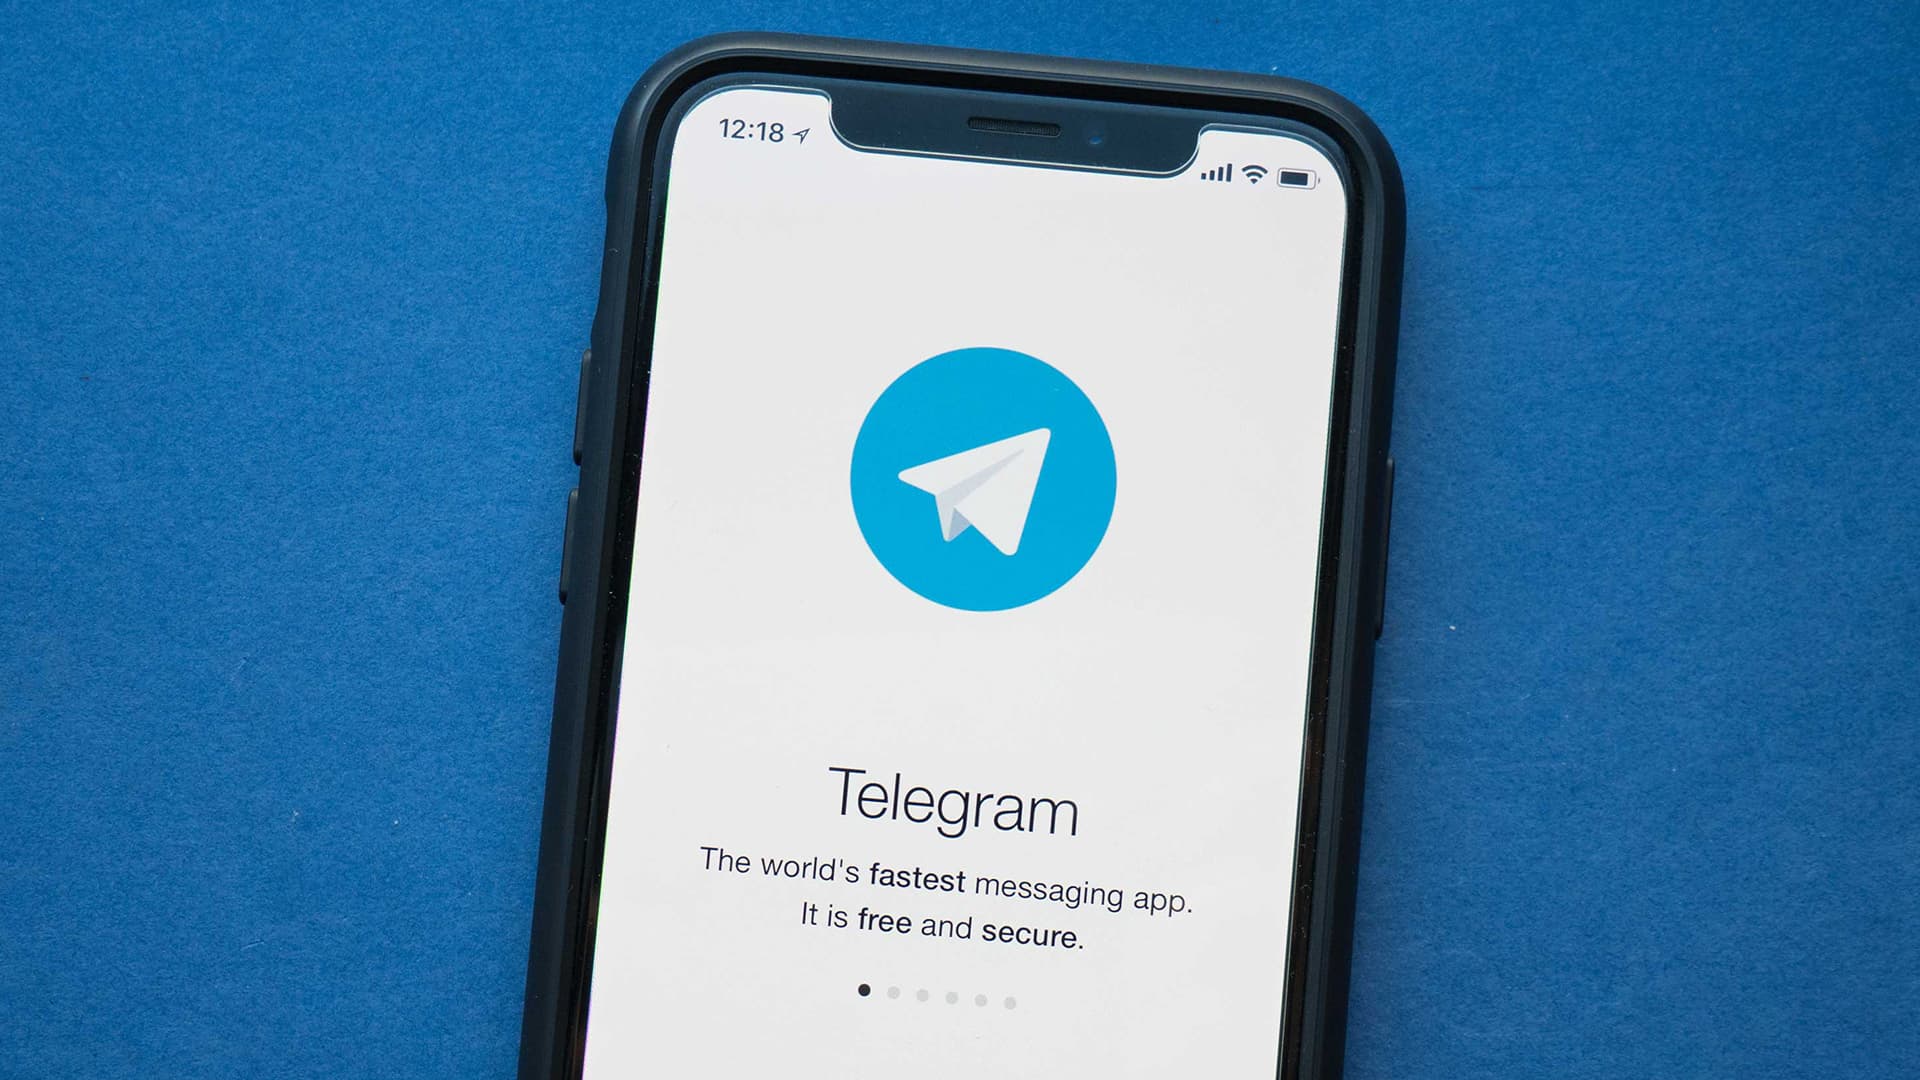 苹果（iOS）进入Telegram受限群组/频道教程